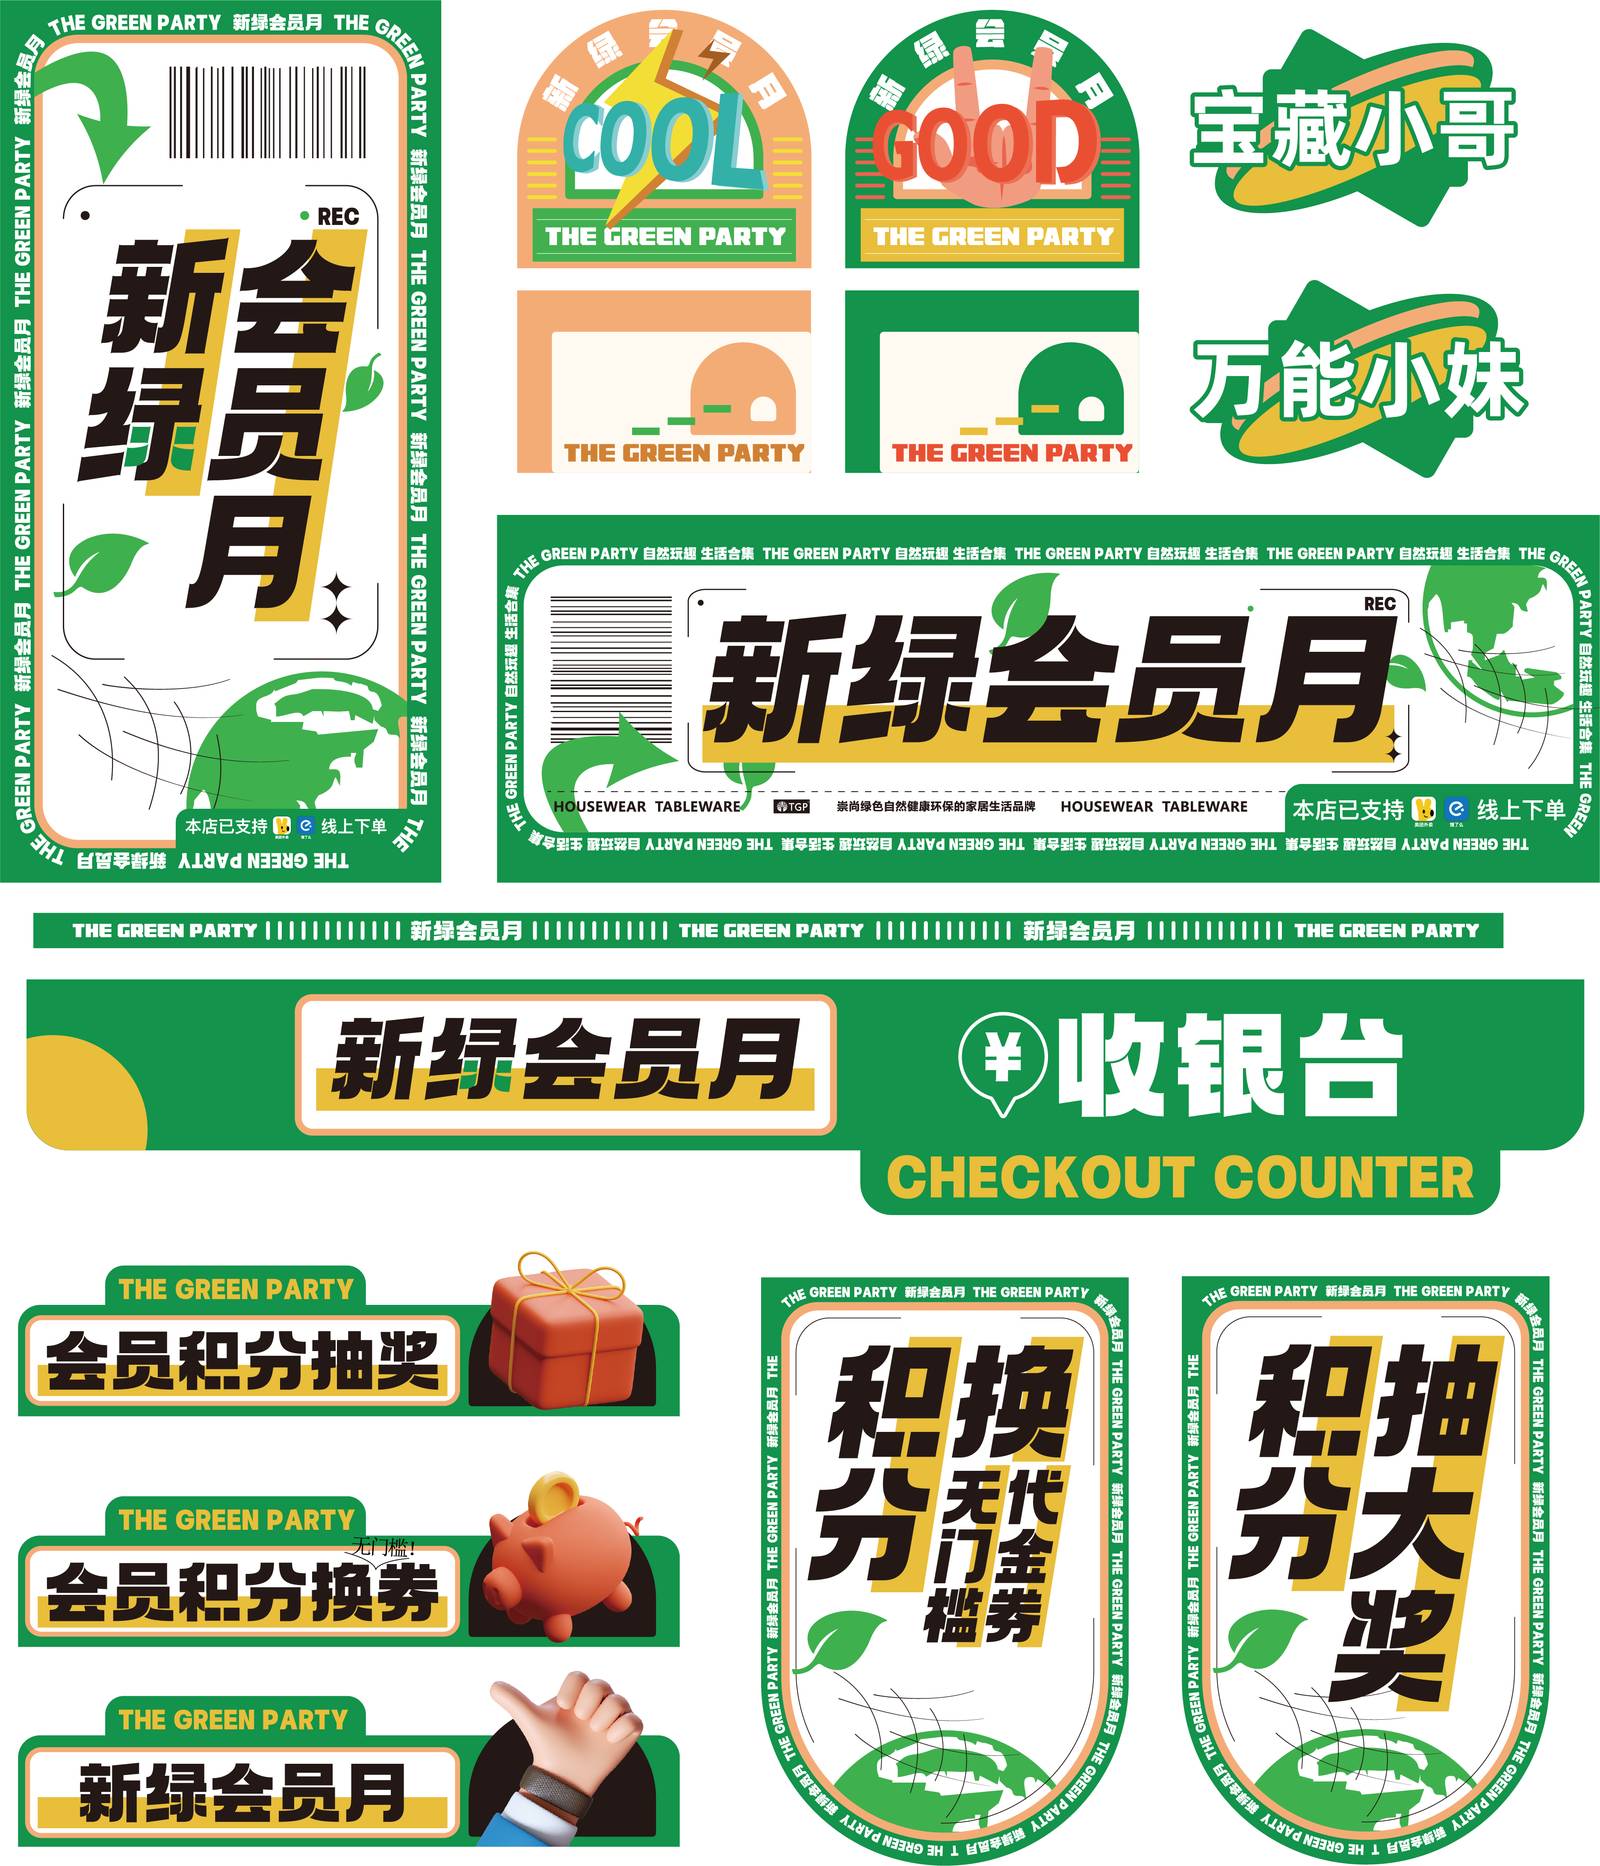 THE GREEN PARTY 快销品牌宣传系列海报-第23张